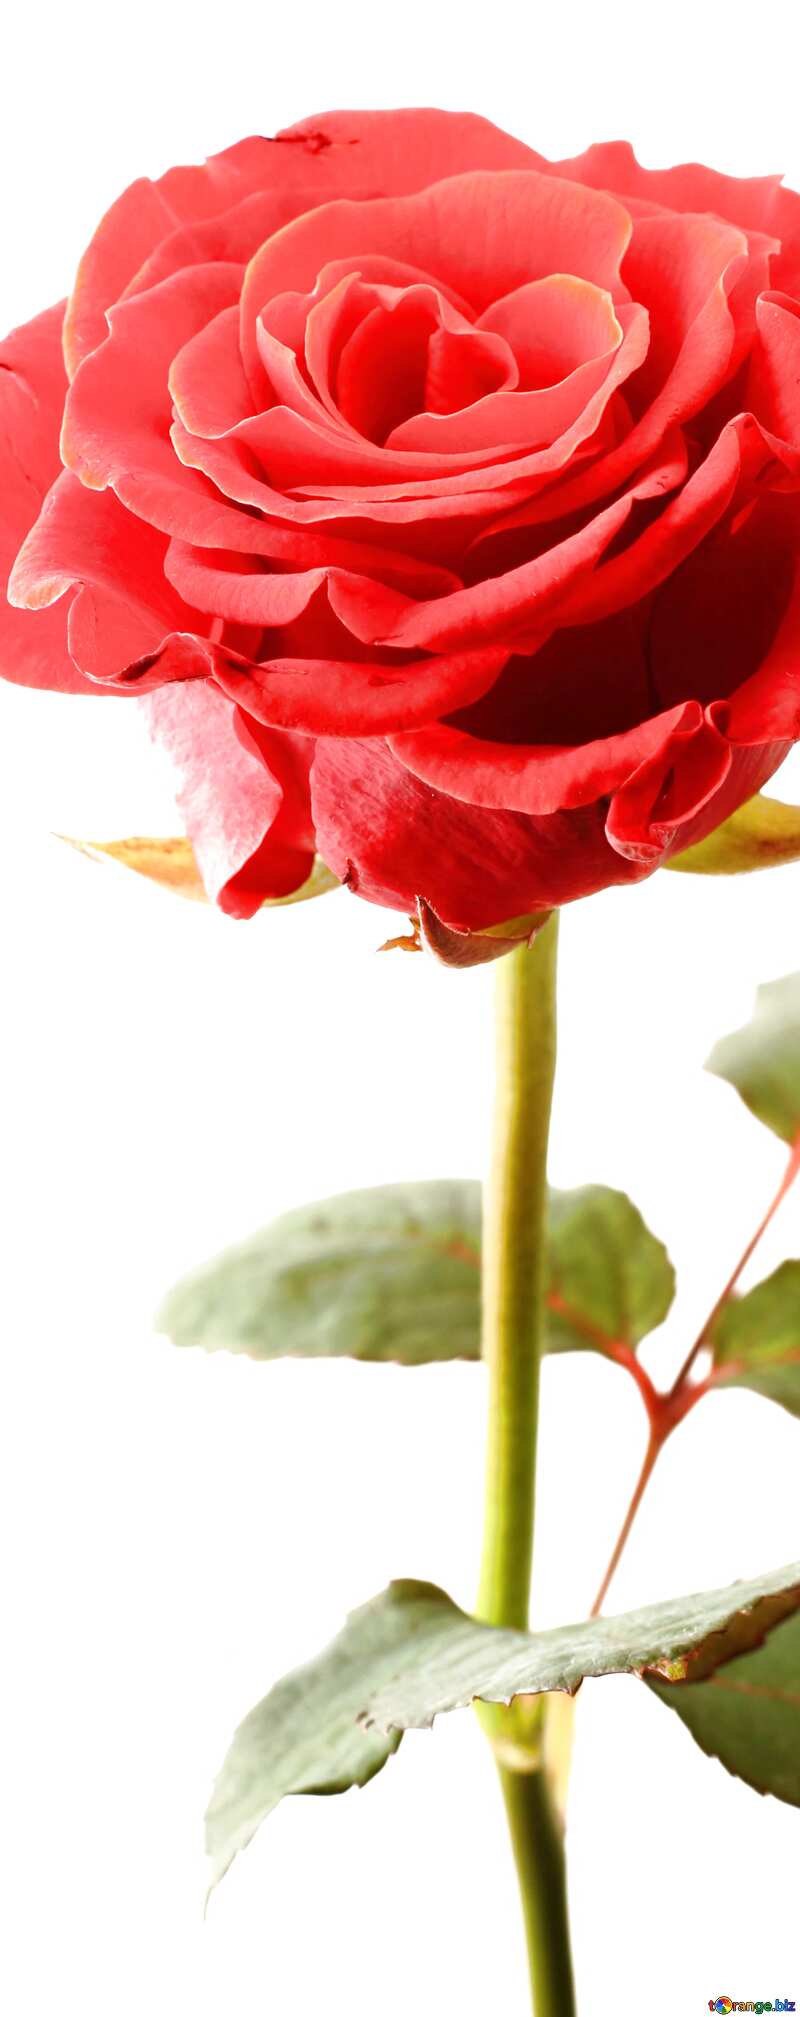 rose flower vertical background №17043